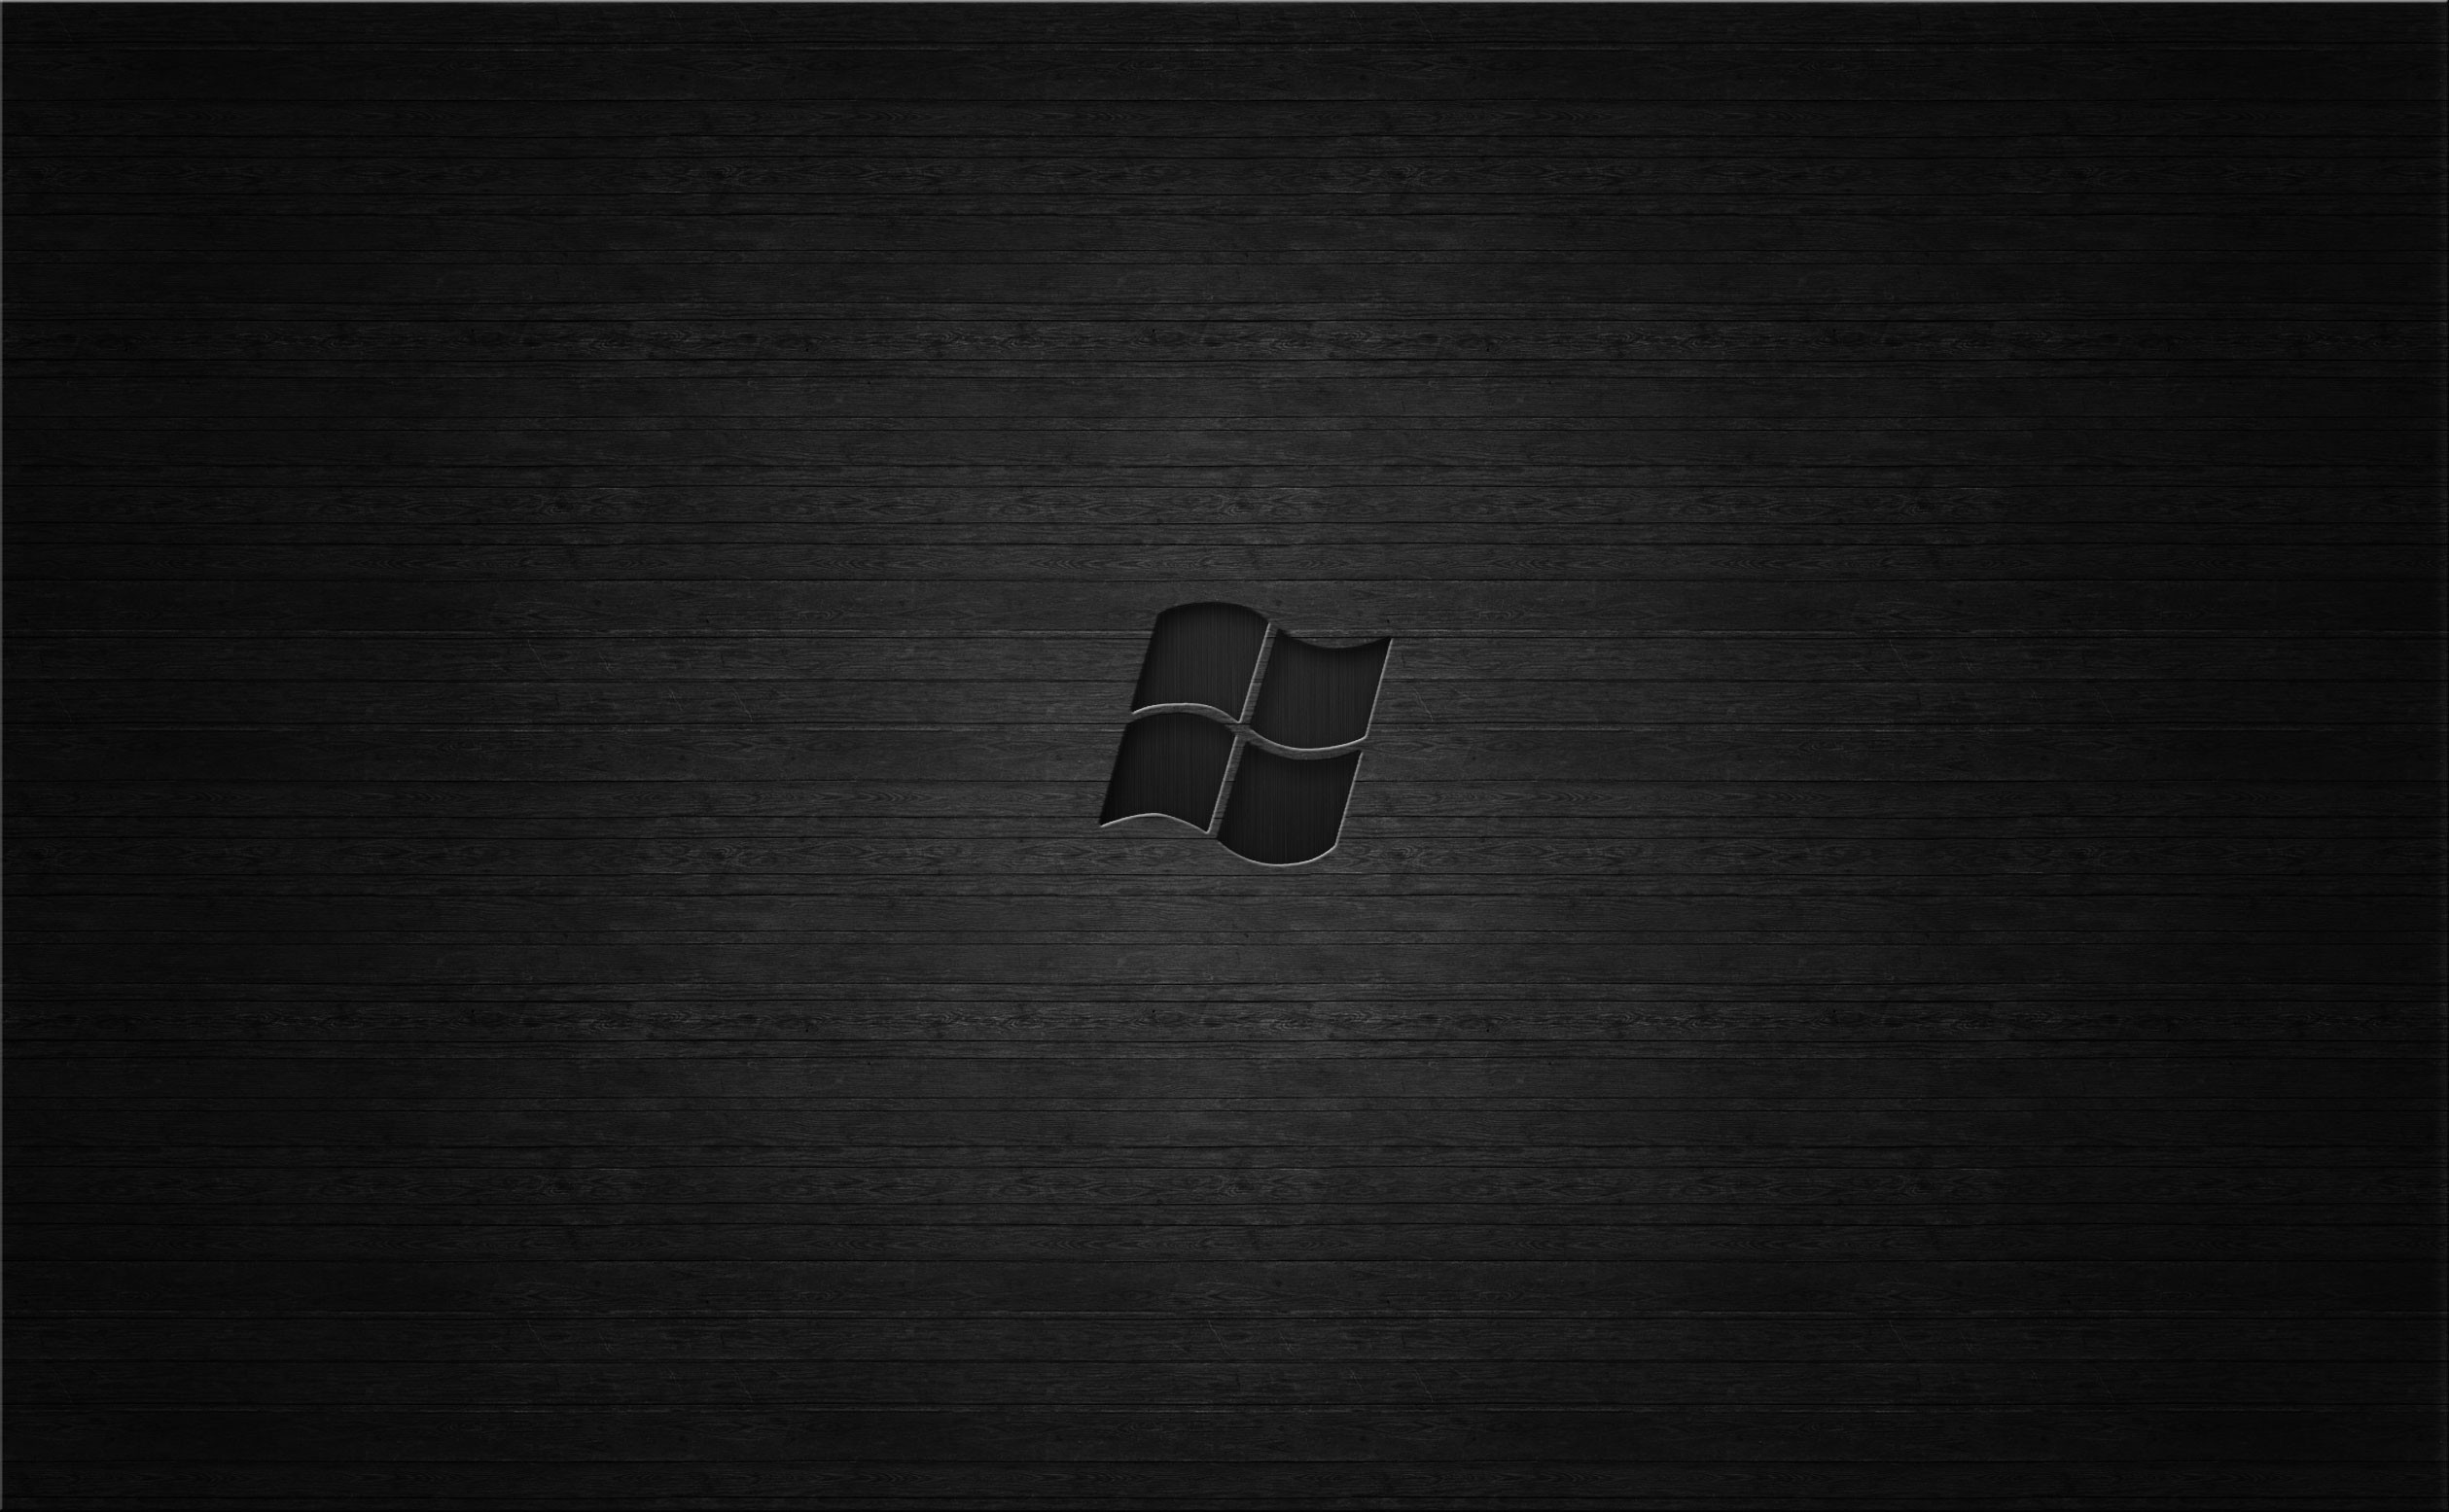 Hình nền đen Windows 7: Để tạo ra một chủ đề trang trí tuyệt vời cho máy tính của bạn, một hình nền đen tinh tế là không thể thiếu. Được thiết kế với phong cách thanh lịch và hiện đại, hình nền đen đang được nhiều người yêu thích. Tôi đảm bảo nó sẽ mang lại một trải nghiệm trực quan cho bạn.